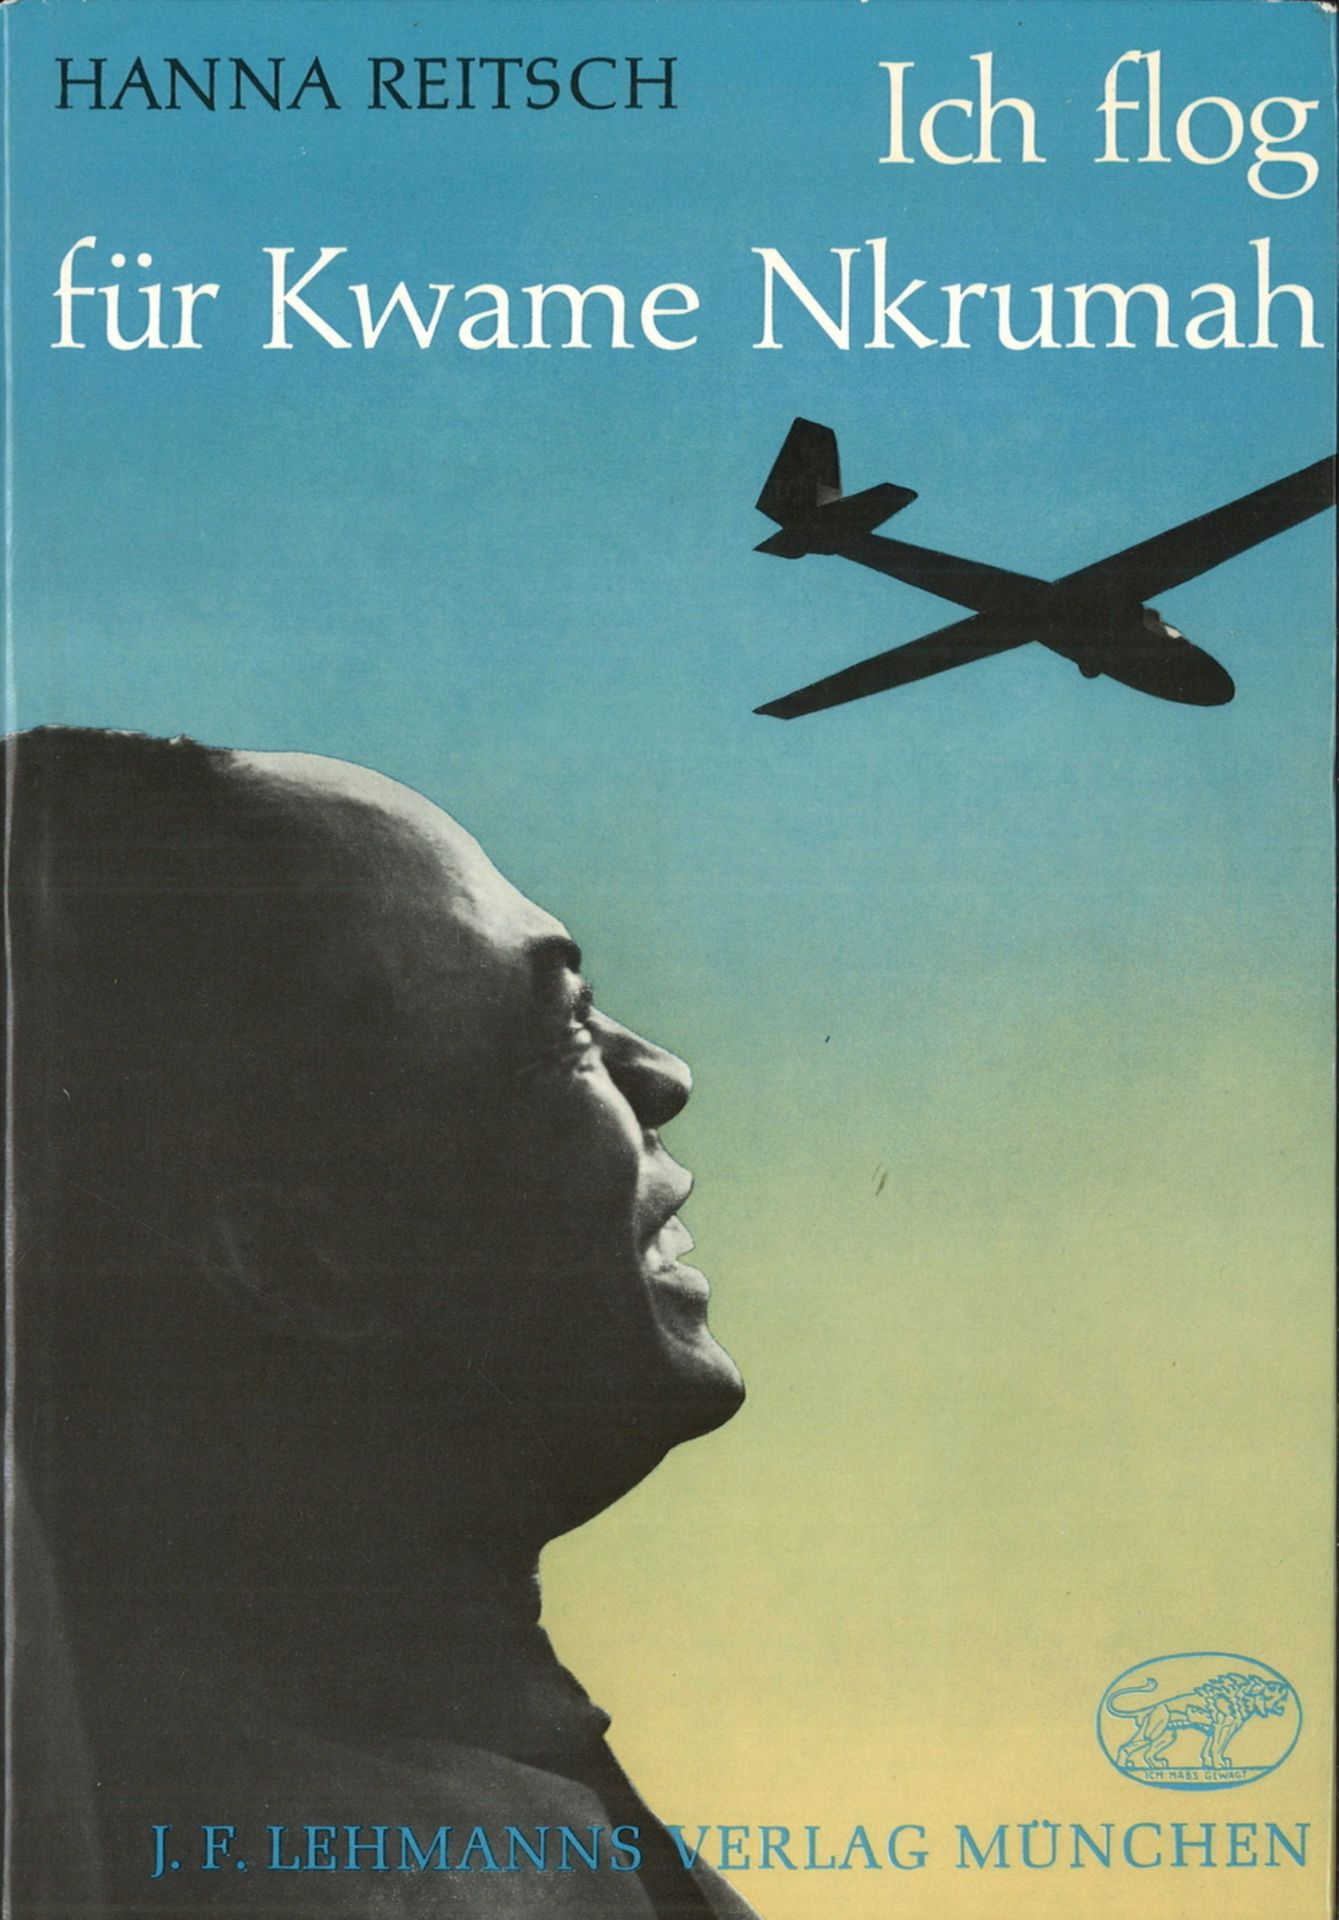 Buch "Ich flog für Kwame Nkrumah", von Hanna Reitsch, 1968, gebunden mit Schutzumschlag, guter